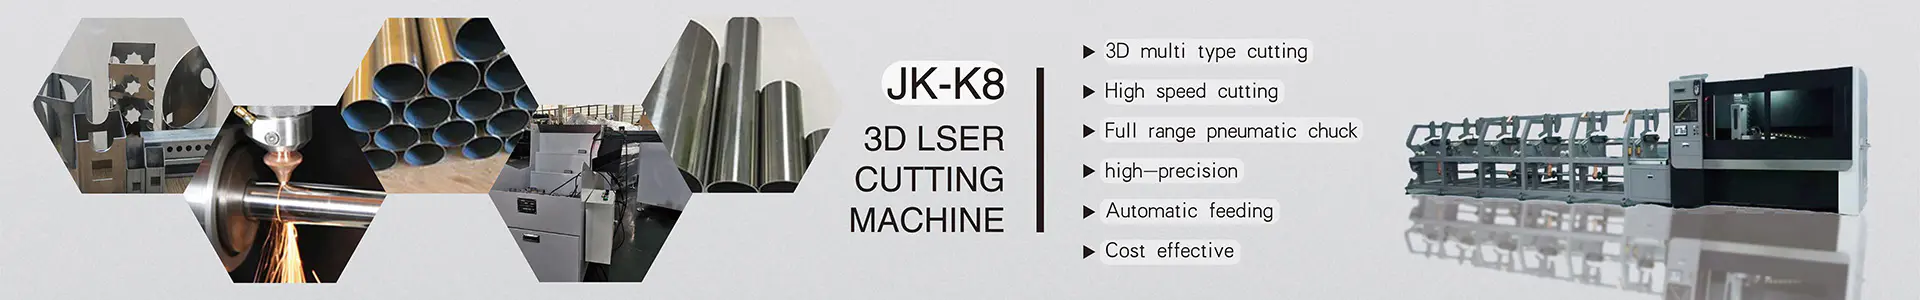 China Laser Pipe Cutting Machine | About Us | JINGKE